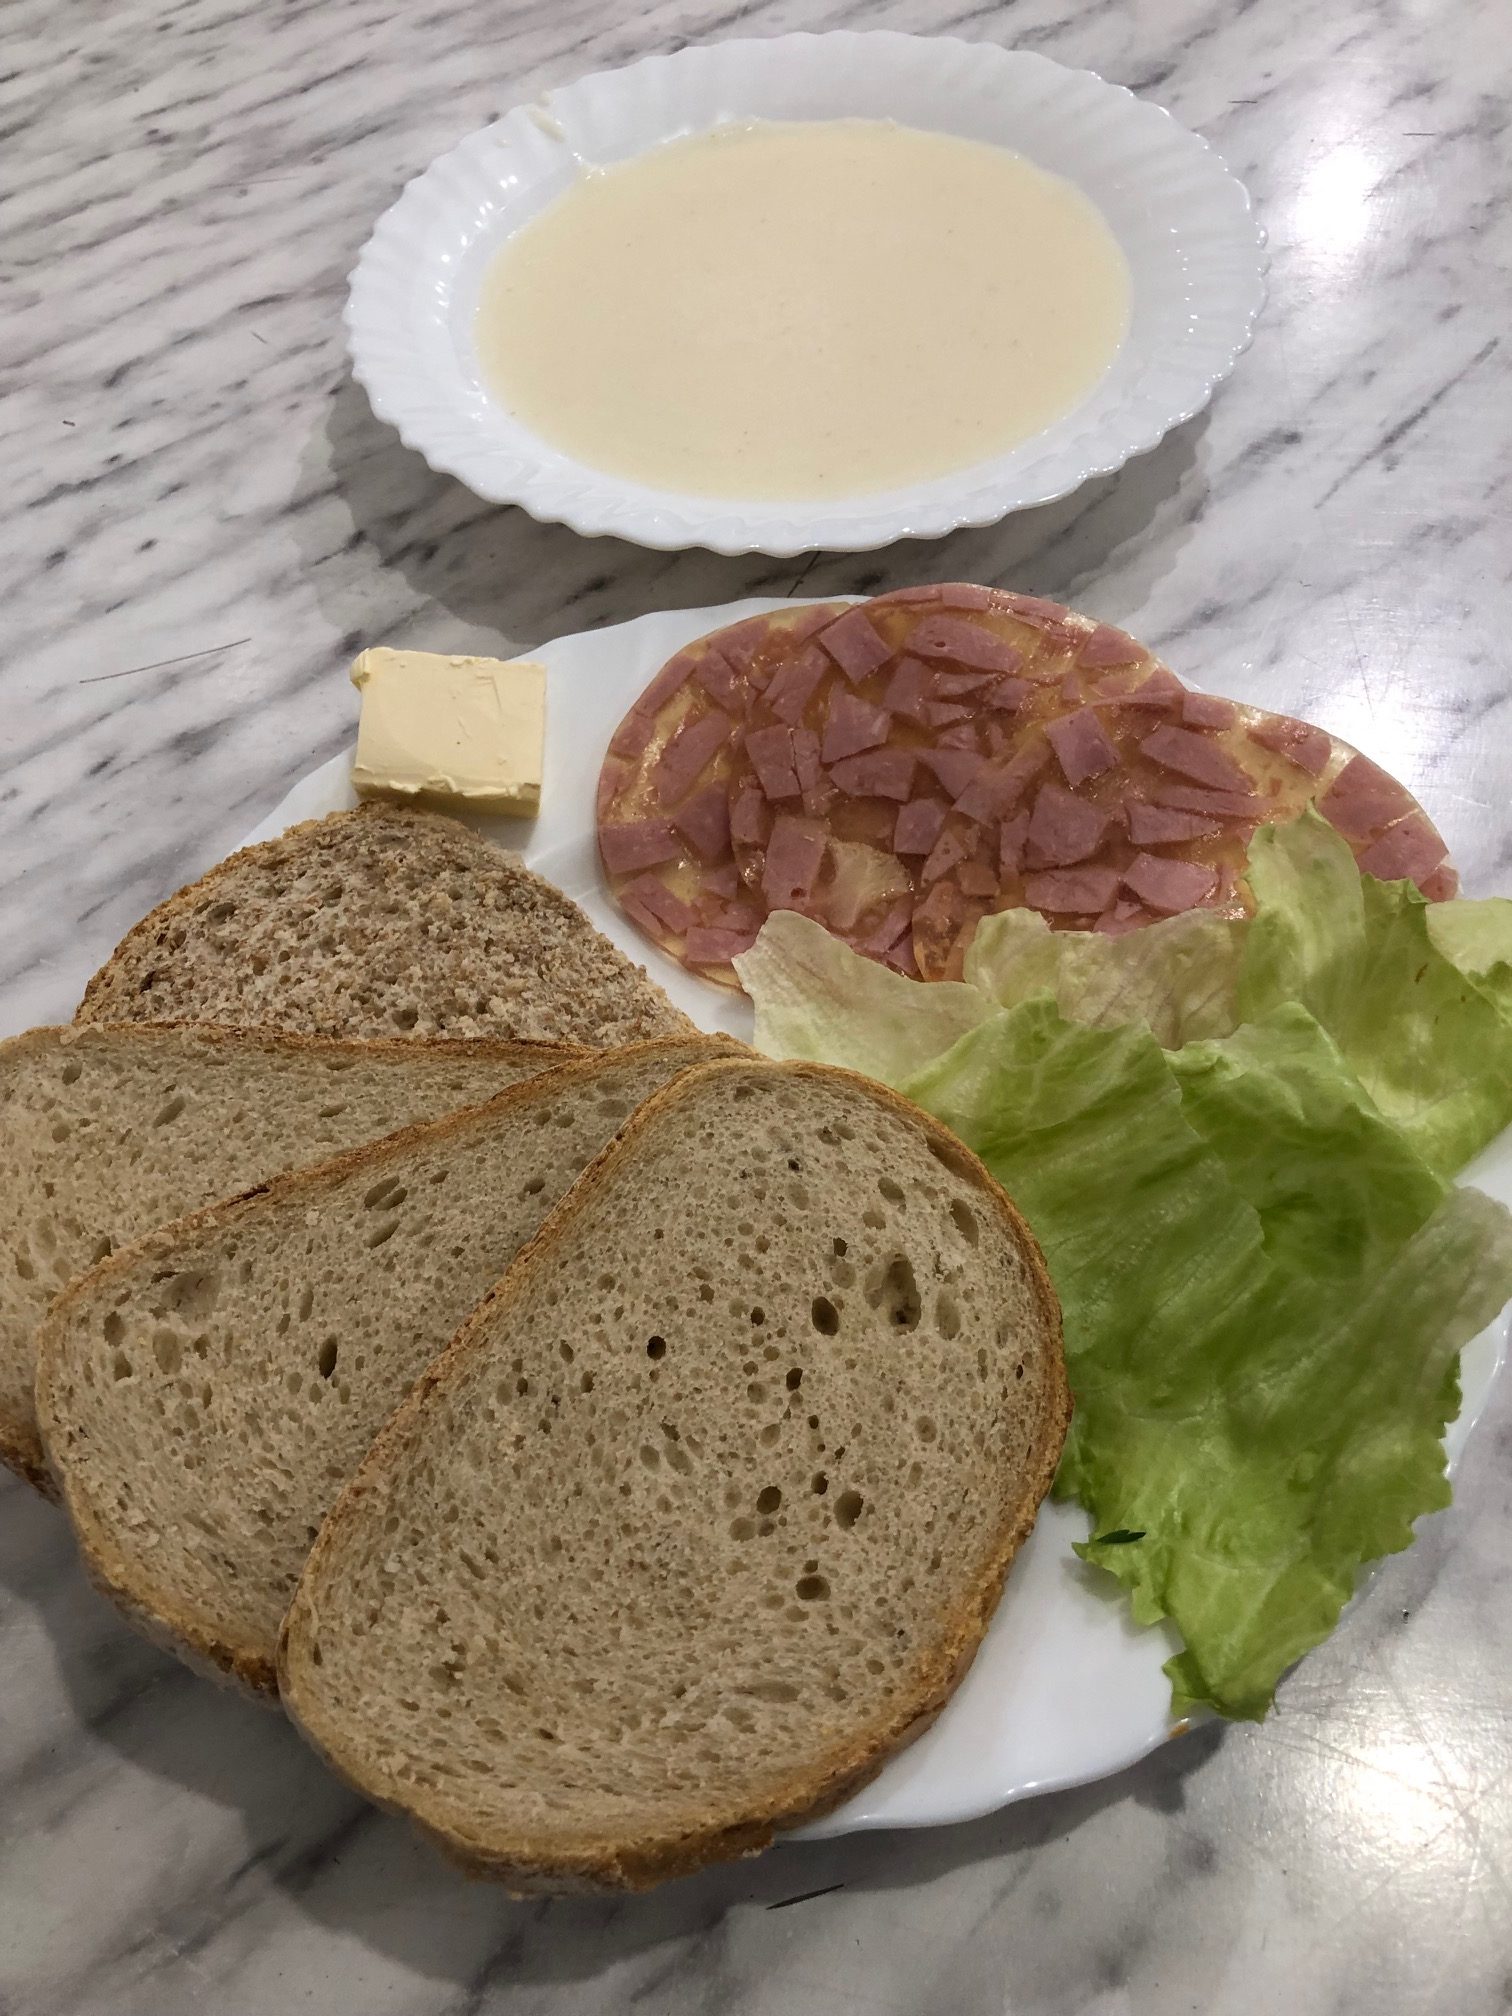 zdjęcie przedstawia śniadanie zlozone z czterech skibek chleba, dwóch plastrów szynki, masła i liści sałaty. na drugim talerzu powyżej zupa mleczna